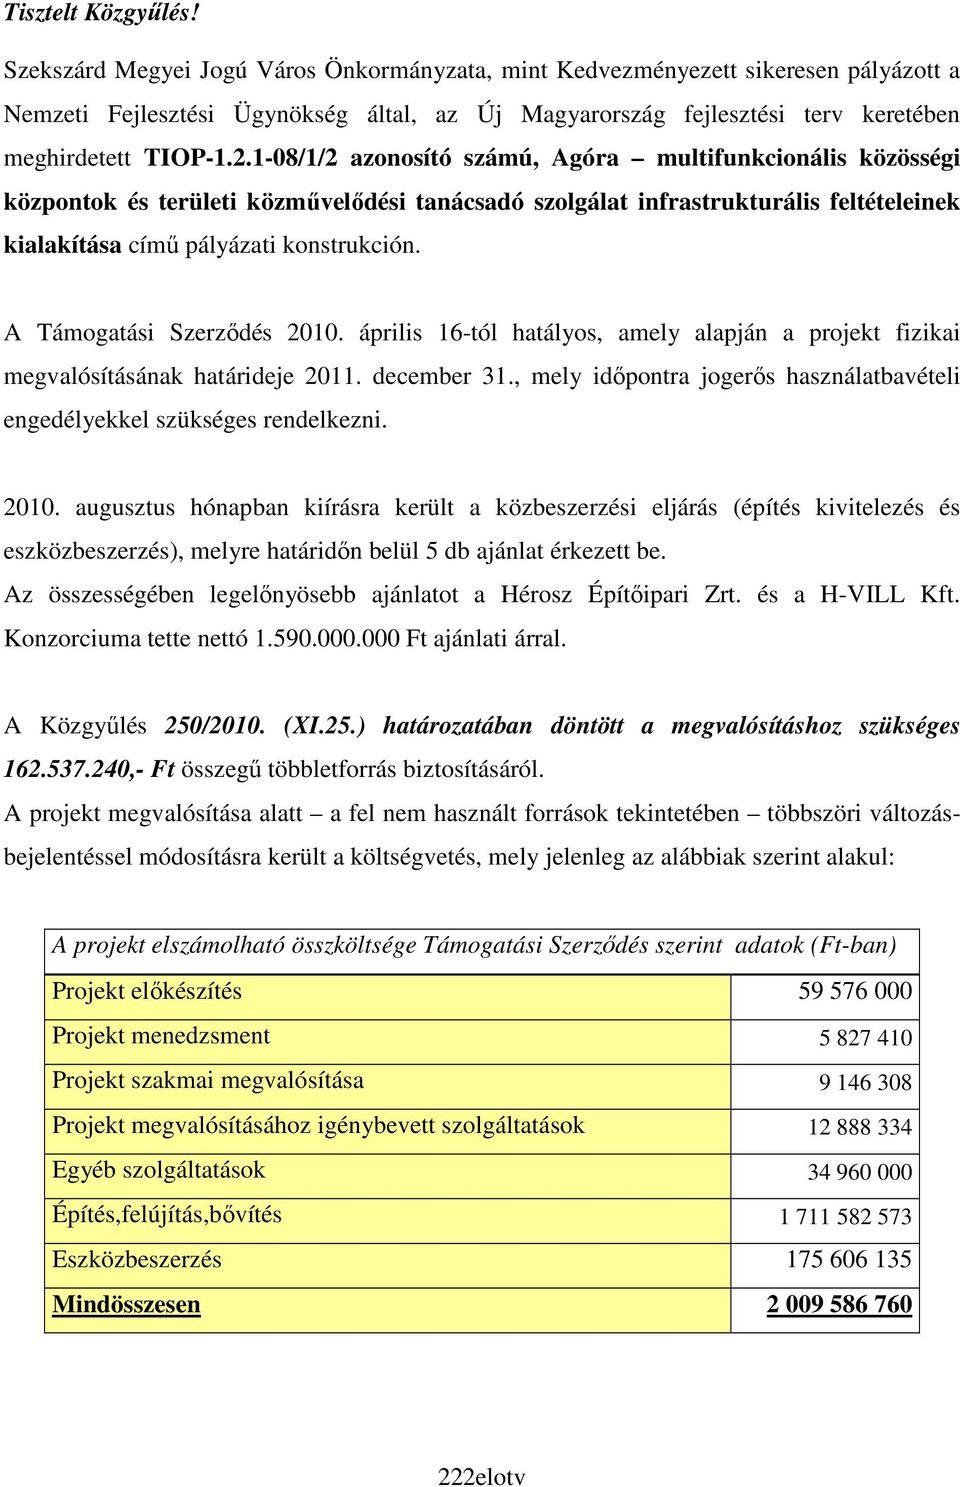 1-08/1/2 azonosító számú, Agóra multifunkcionális közösségi központok és területi közmővelıdési tanácsadó szolgálat infrastrukturális feltételeinek kialakítása címő pályázati konstrukción.